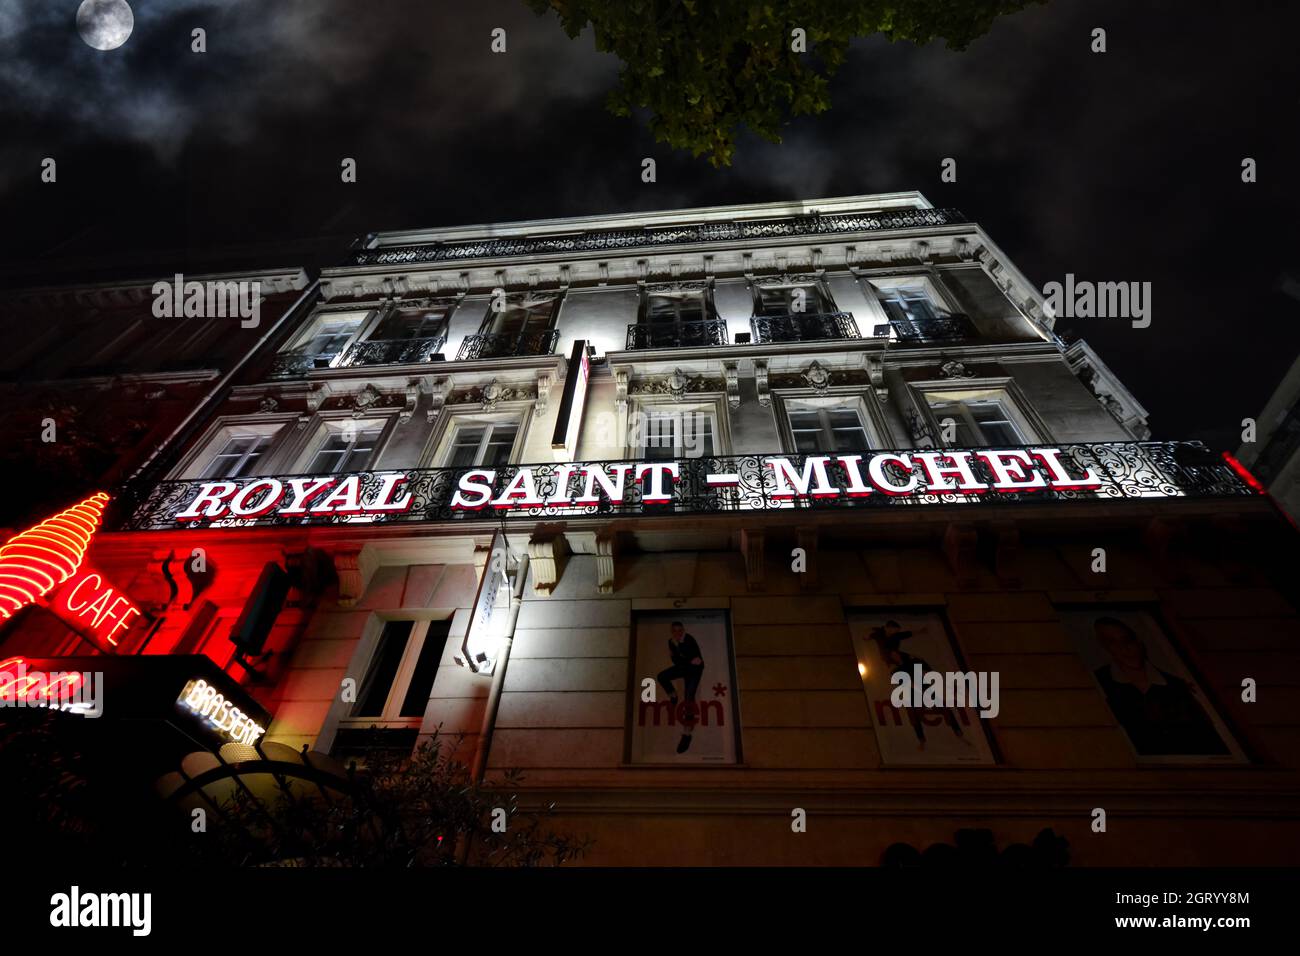 Vue nocturne sur les enseignes lumineuses au néon rouge et blanc et la façade de l'Hôtel Royal Saint-Michel dans le quartier latin de Paris France. Banque D'Images